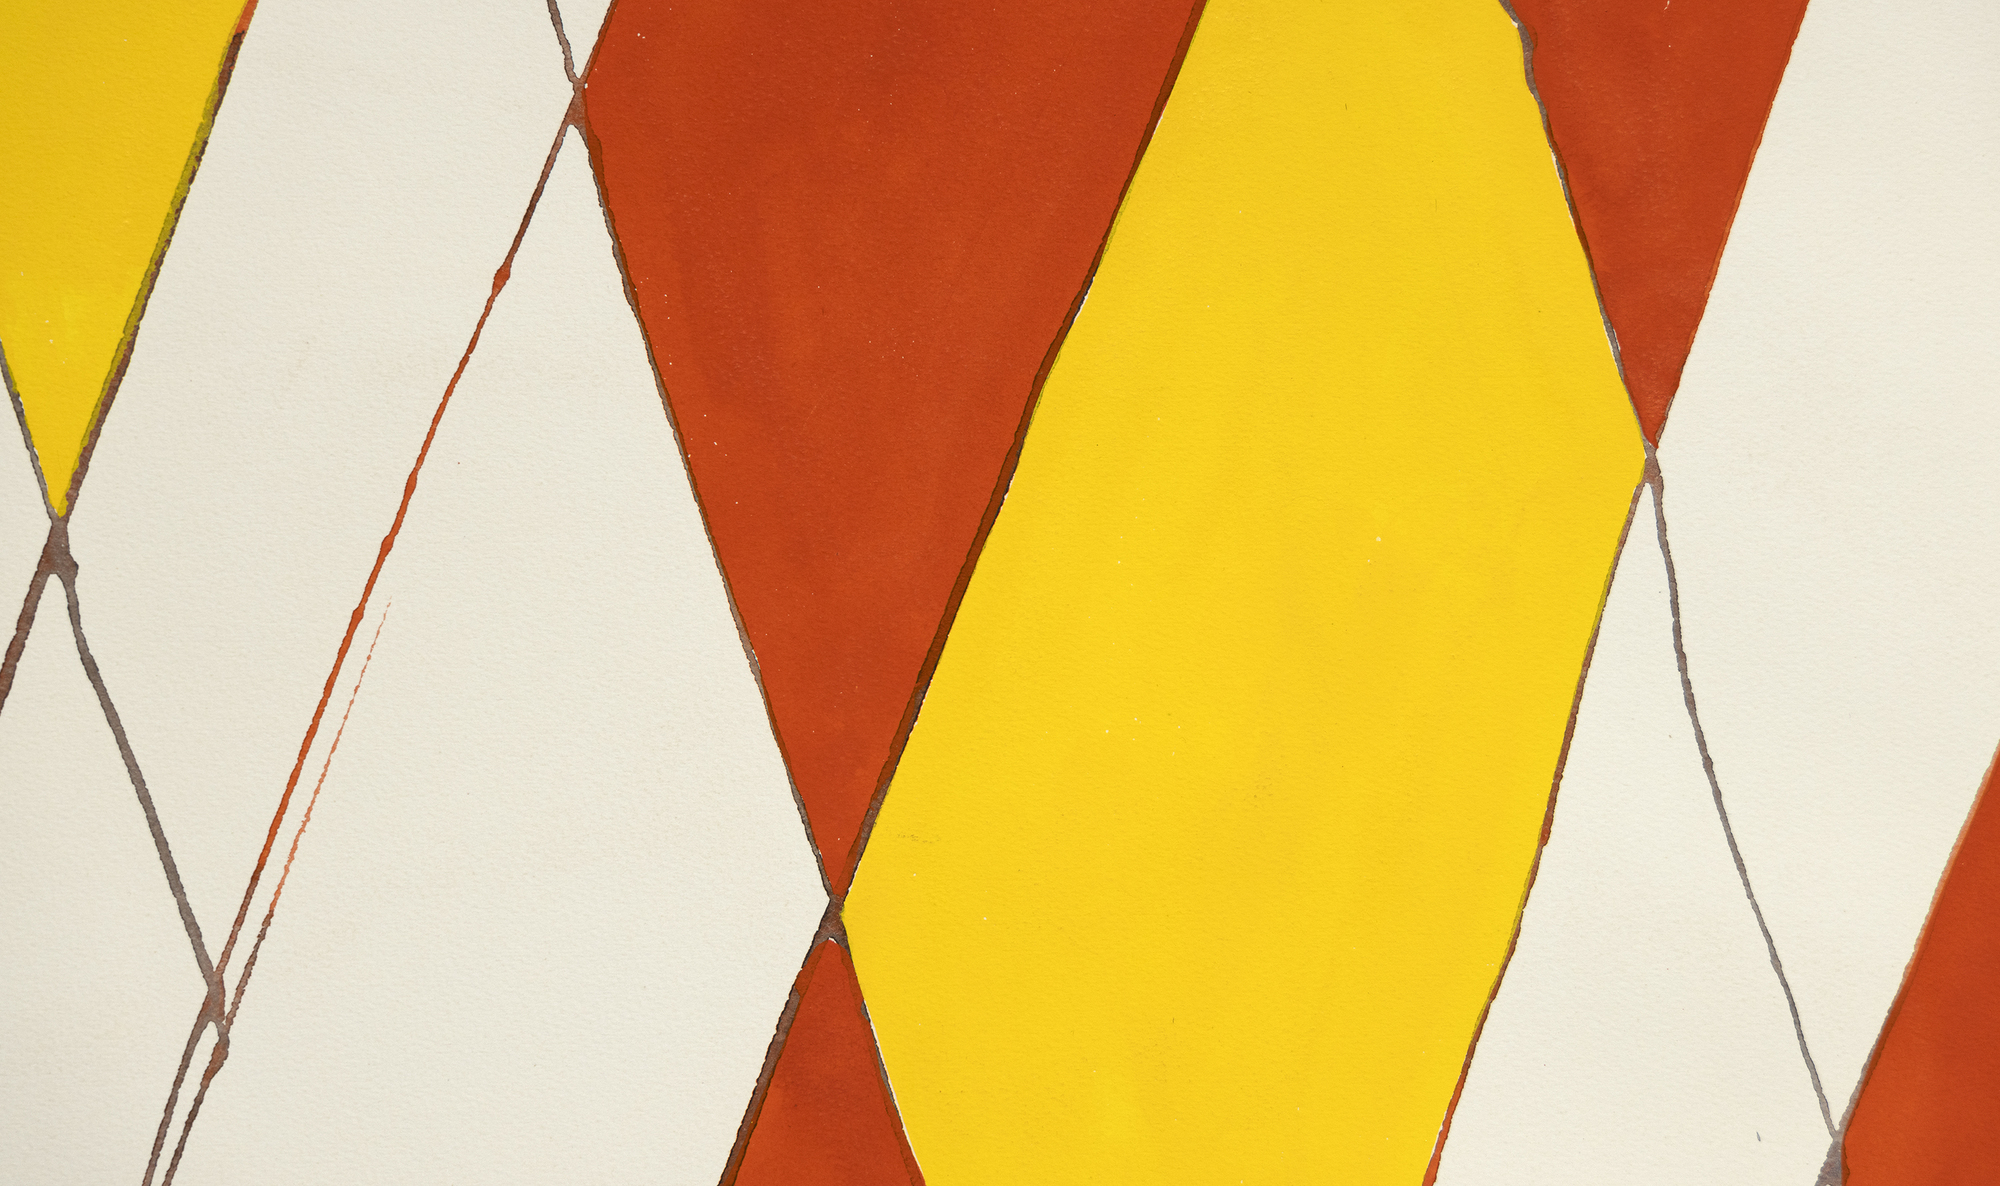 亚历山大-考尔德（Alexander Calder）的水粉画作品 &quot;Wigwam rouge et jaune &quot;是对设计和色彩的生动探索。这幅画的构图以对角线格为主，对角线在顶点附近相交，呈现出一种动态平衡。考尔德用红色和黄色的菱形引入了奇思妙想的元素，为作品注入了童趣，营造出节日的气氛。右倾线条顶点的红色小球唤起了人们的奇思妙想，而左倾线条顶端的灰色小球则提供了对比和平衡。考尔德巧妙地将简洁和重要的设计元素融合在一起，使 Wigwam rouge et jaune 成为一种视觉享受。